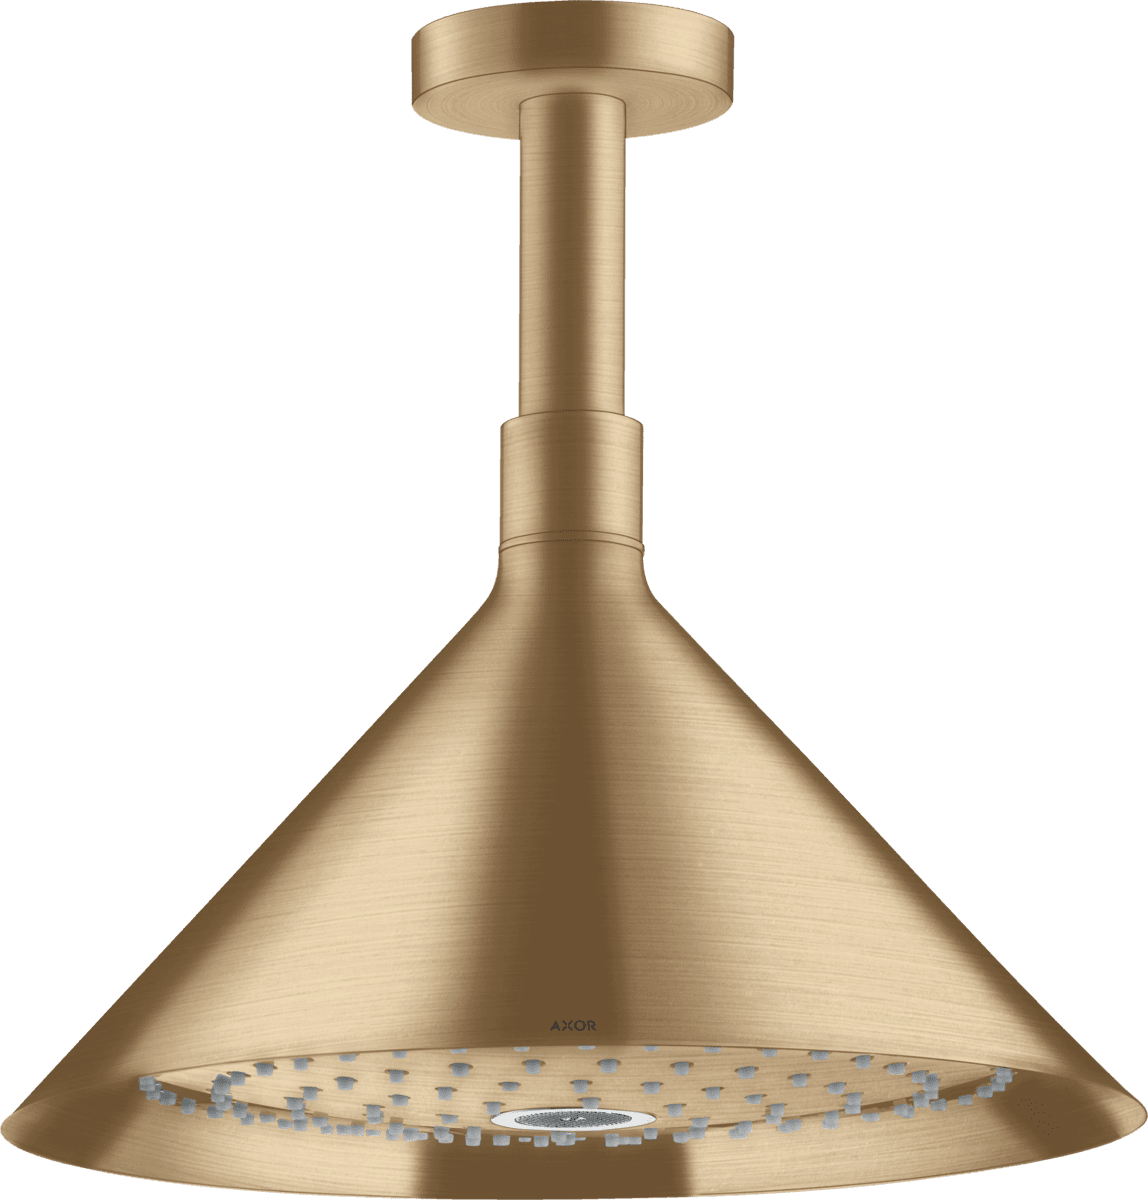 εικόνα του HANSGROHE AXOR Showers/Front Overhead shower 240 2jet with ceiling connector #26022140 - Brushed Bronze